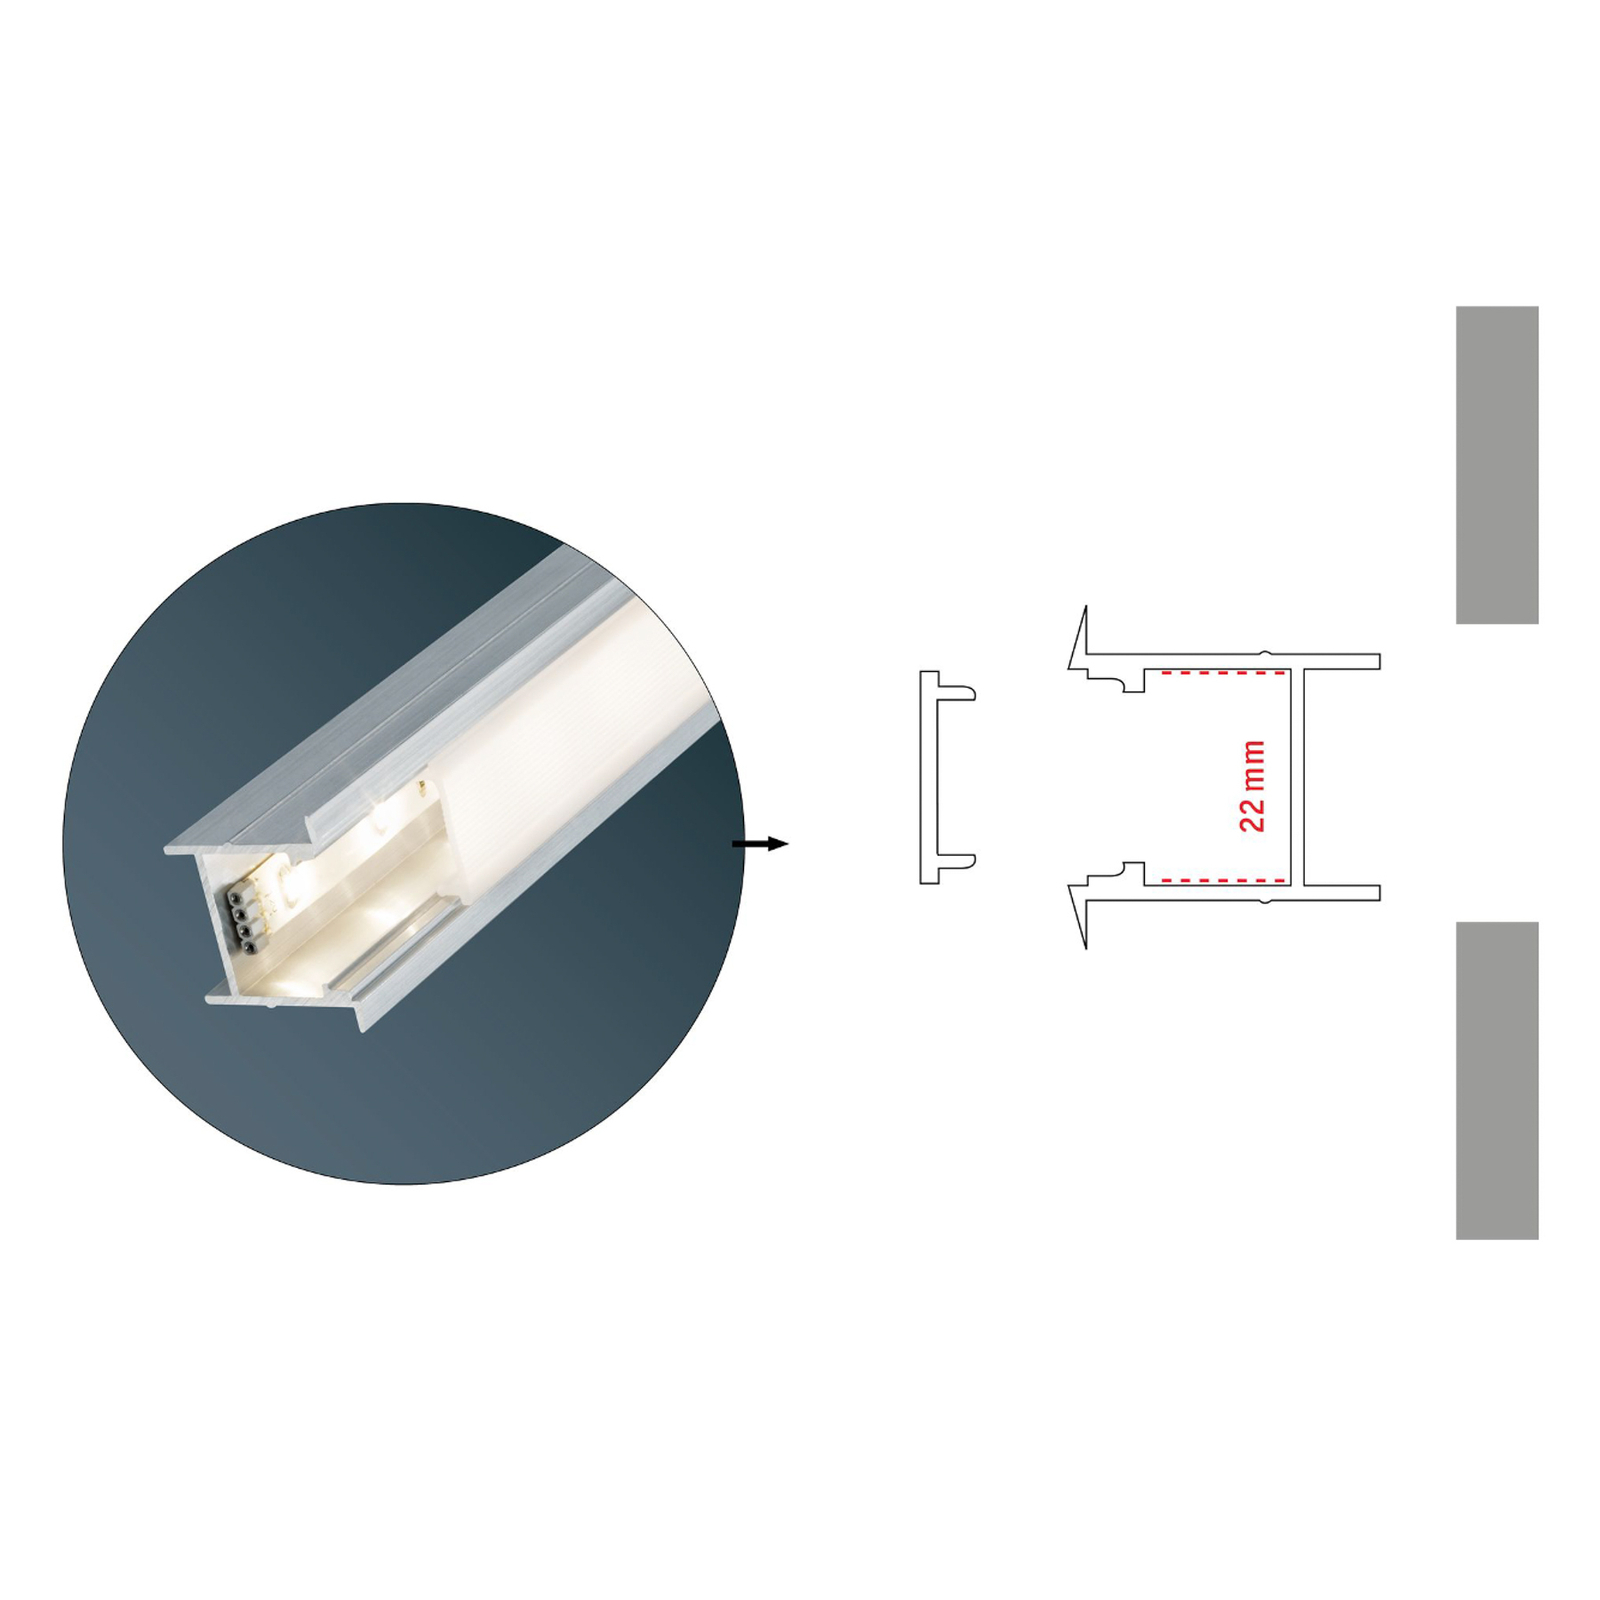 Deep inbouwprofiel voor LED strips | Lampen24.be